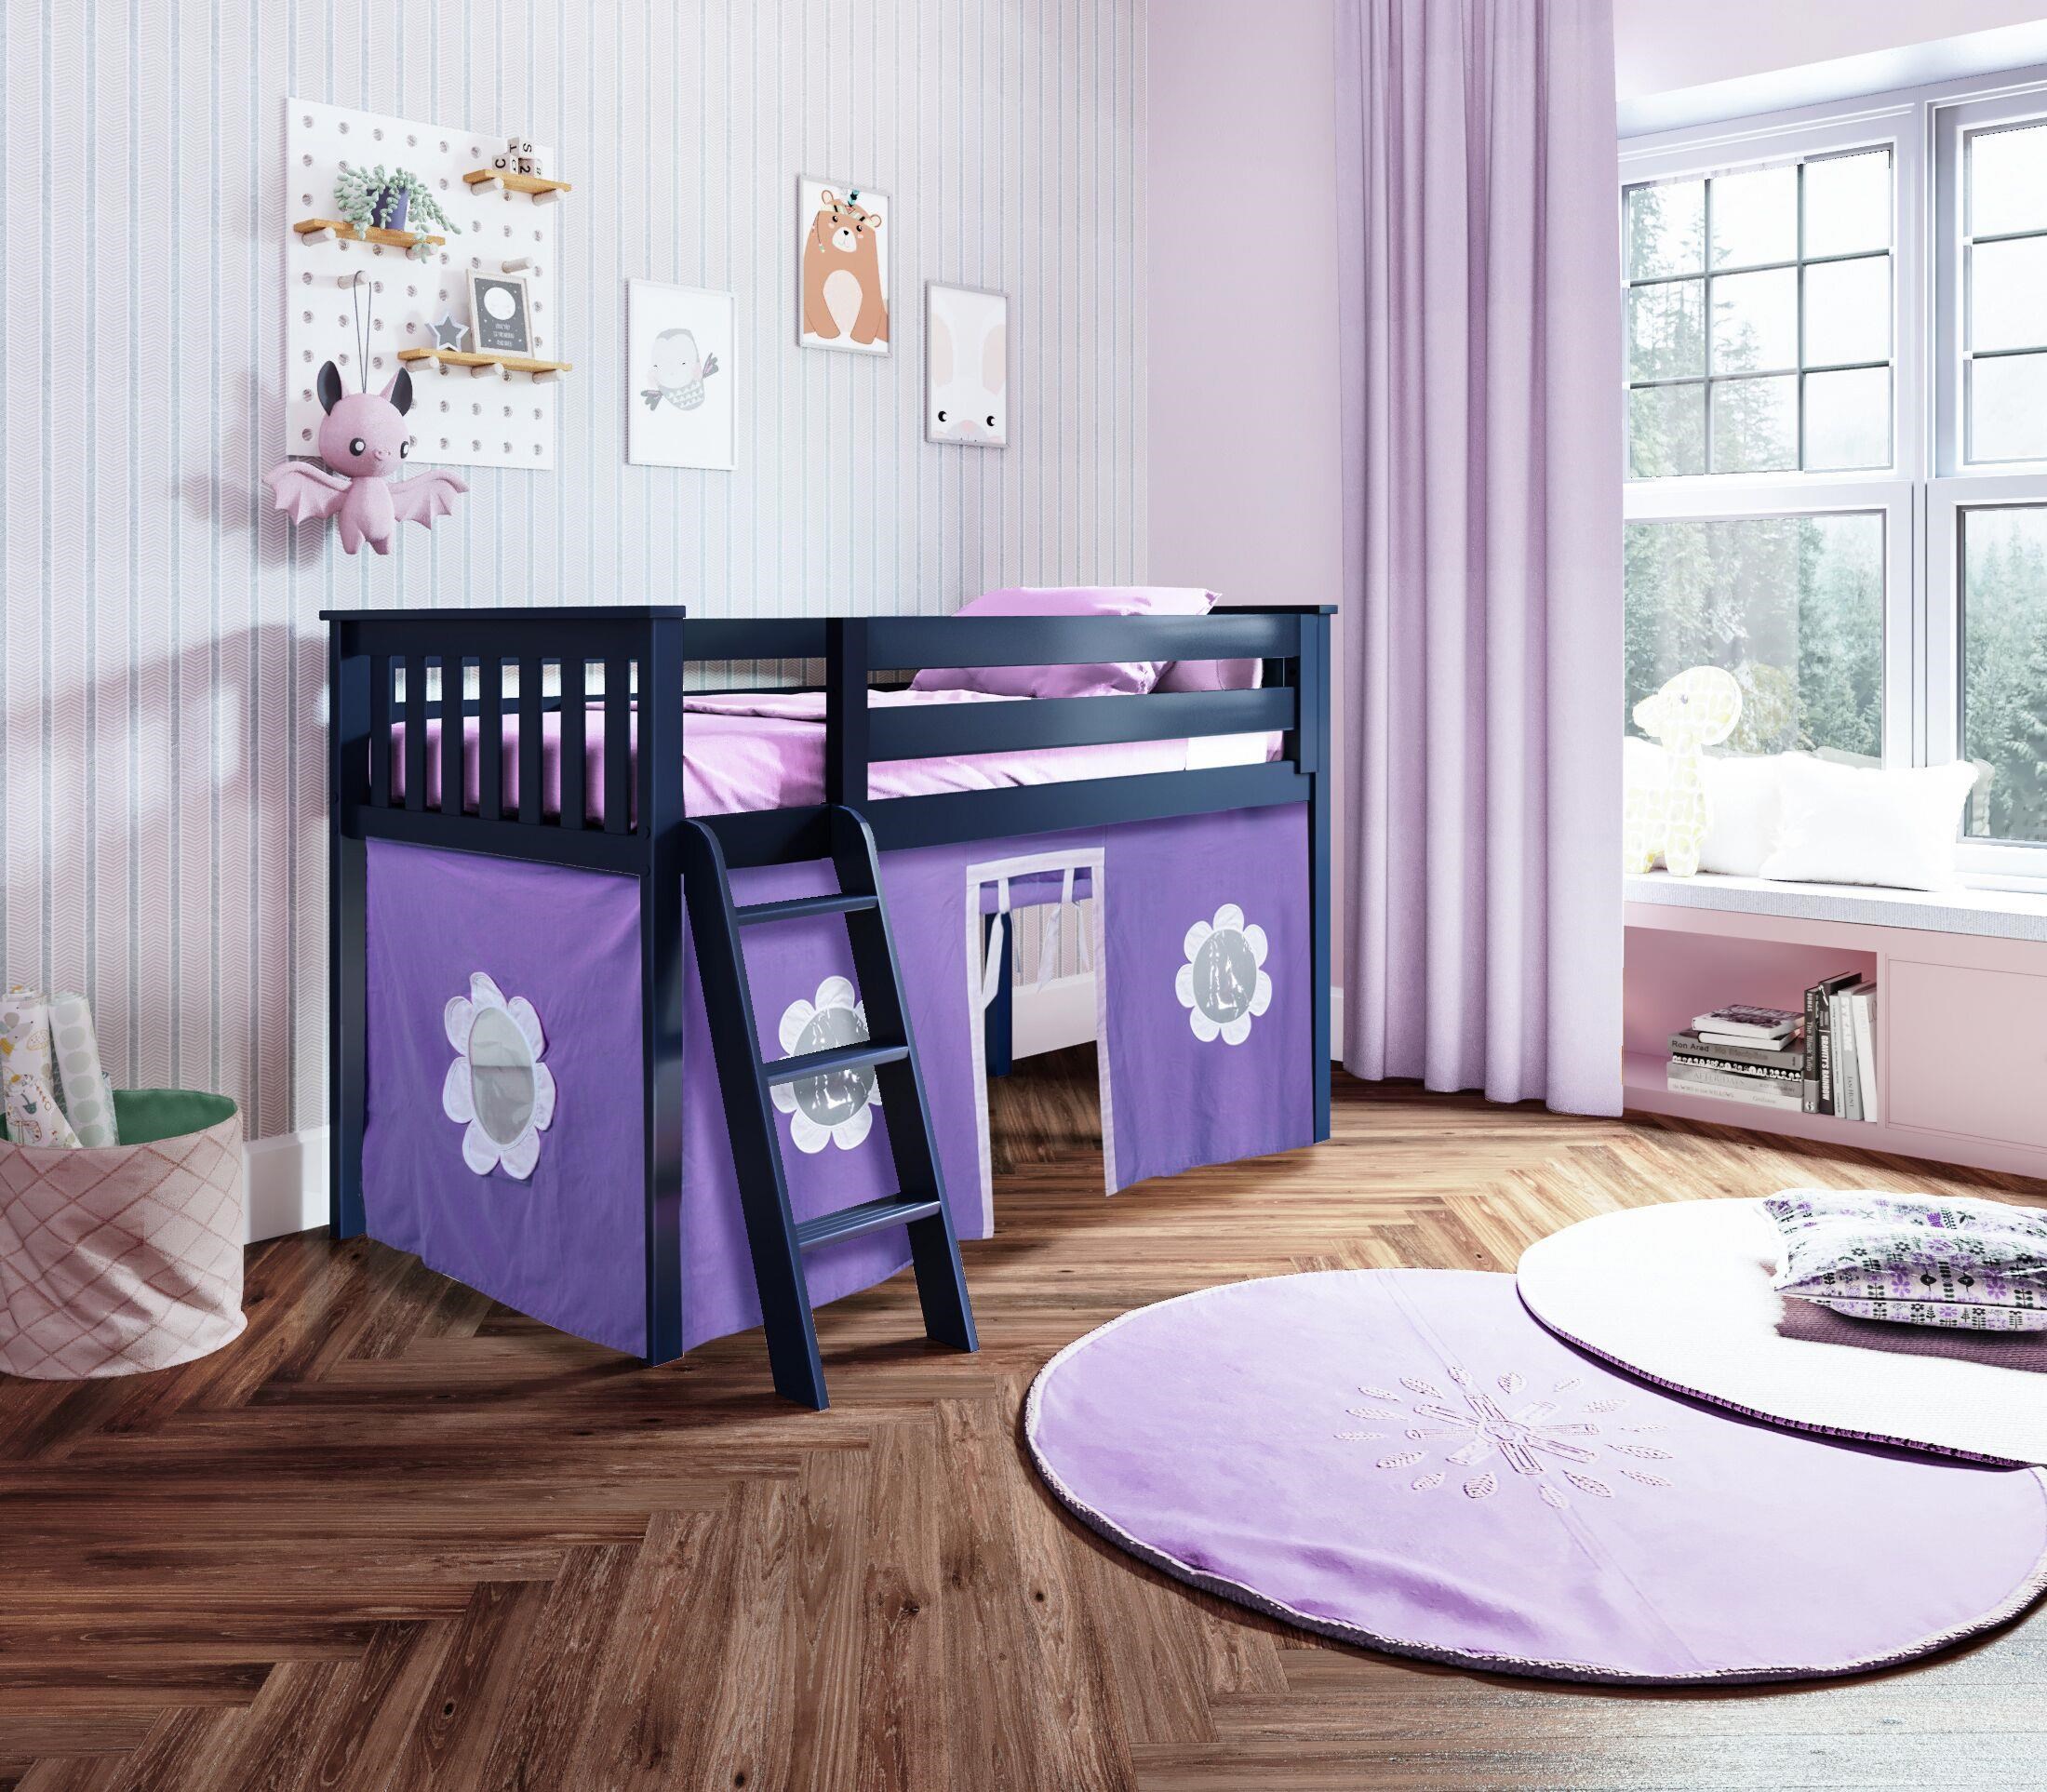 kids purple bed